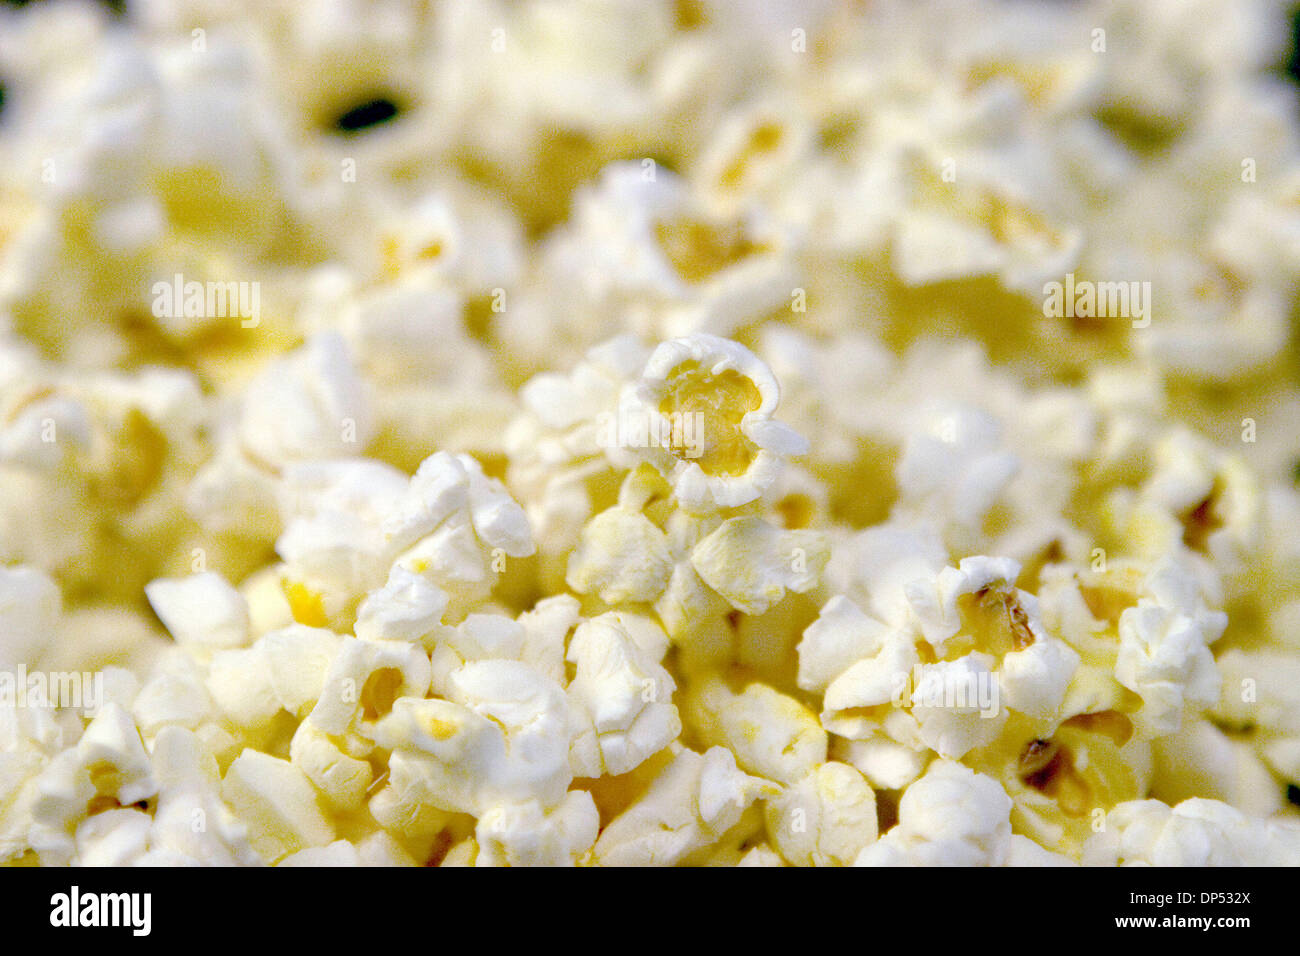 Aug 29, 2006; Los Angeles, CA, Stati Uniti d'America; Popcorn o pop corn è  un tipo di mais che si gonfia quando è riscaldato in olio o da calore  secco. Particolare varietà